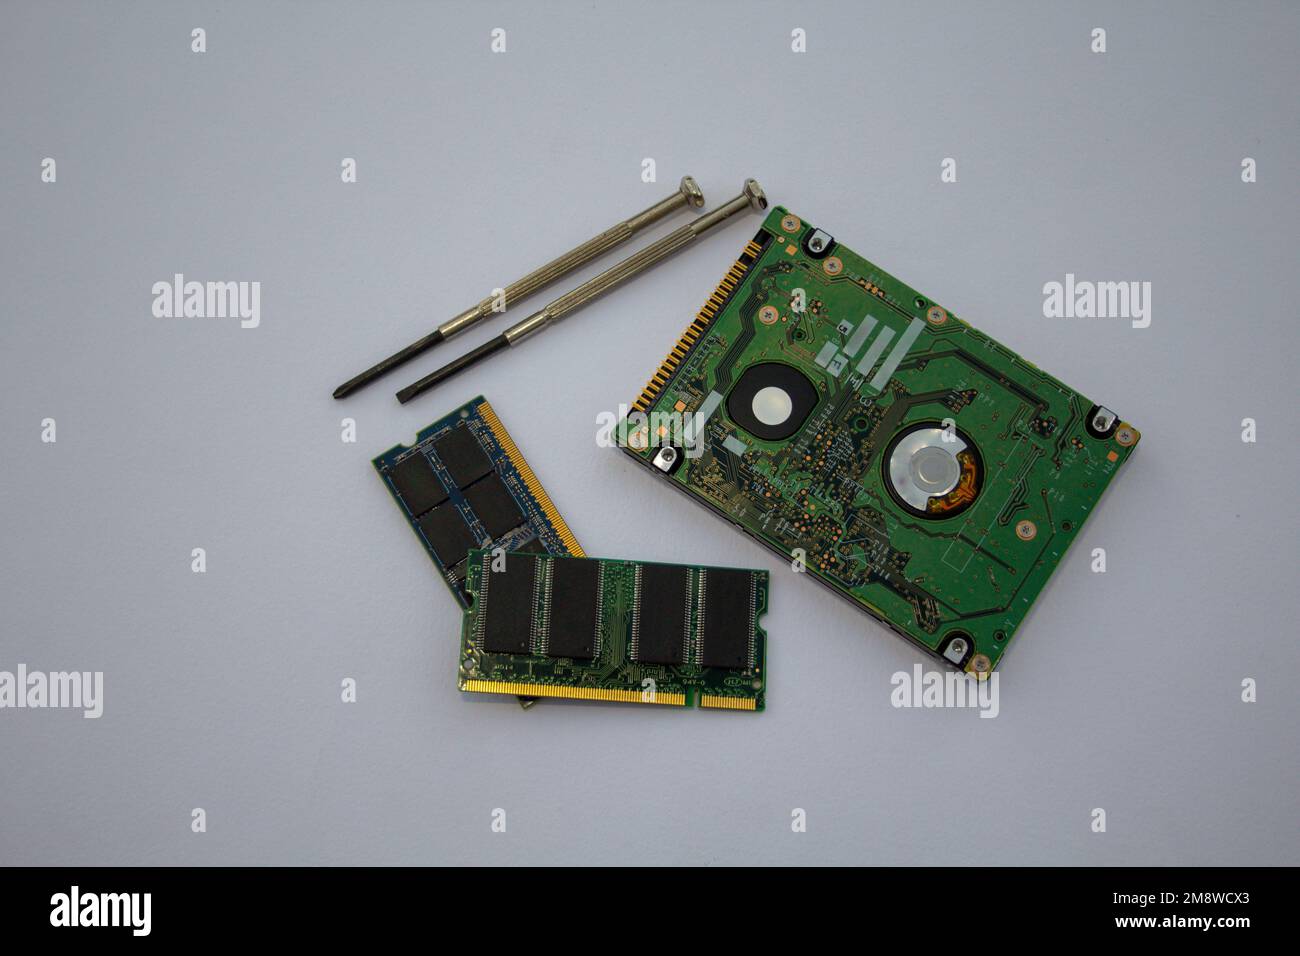 Image d'un disque dur, mémoire RAM d'un PC avec des tournevis  correspondants pour l'assemblage. Remplacement des composants électroniques  du calculateur Photo Stock - Alamy